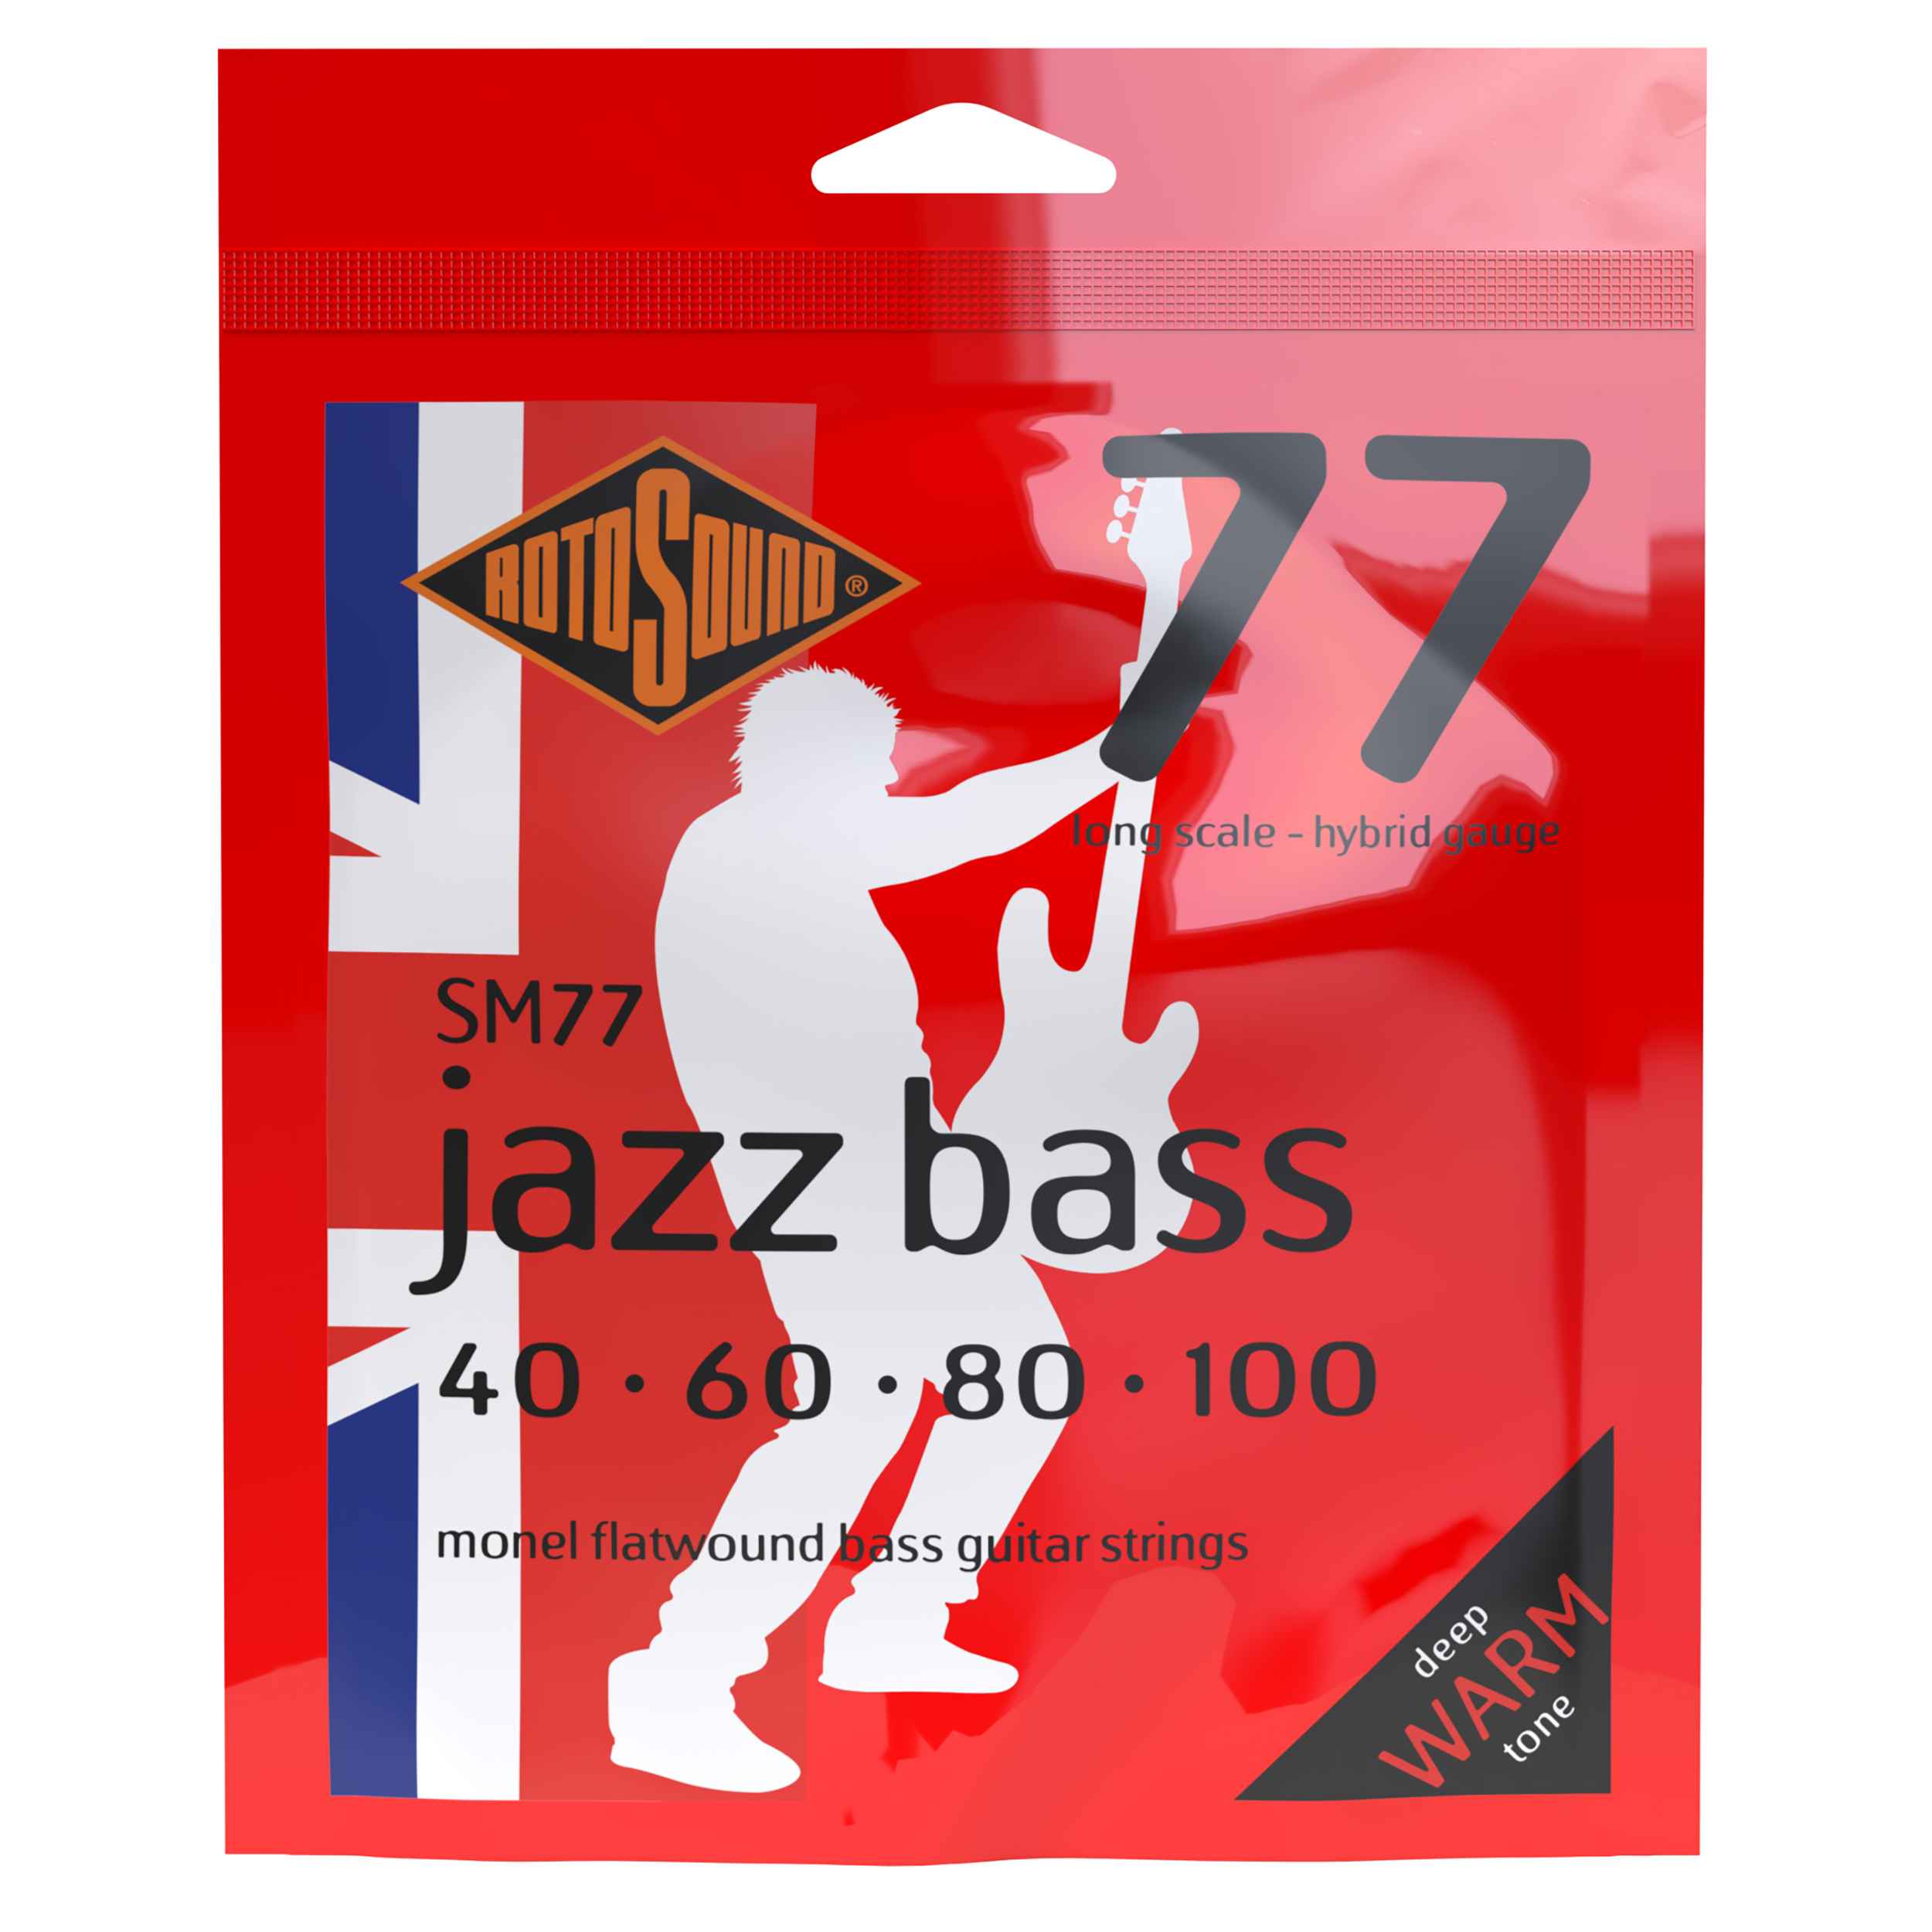 ROTOSOUND SM77 Jazz Bass 77 Hybrid 40-100 LONG SCALE エレキベース